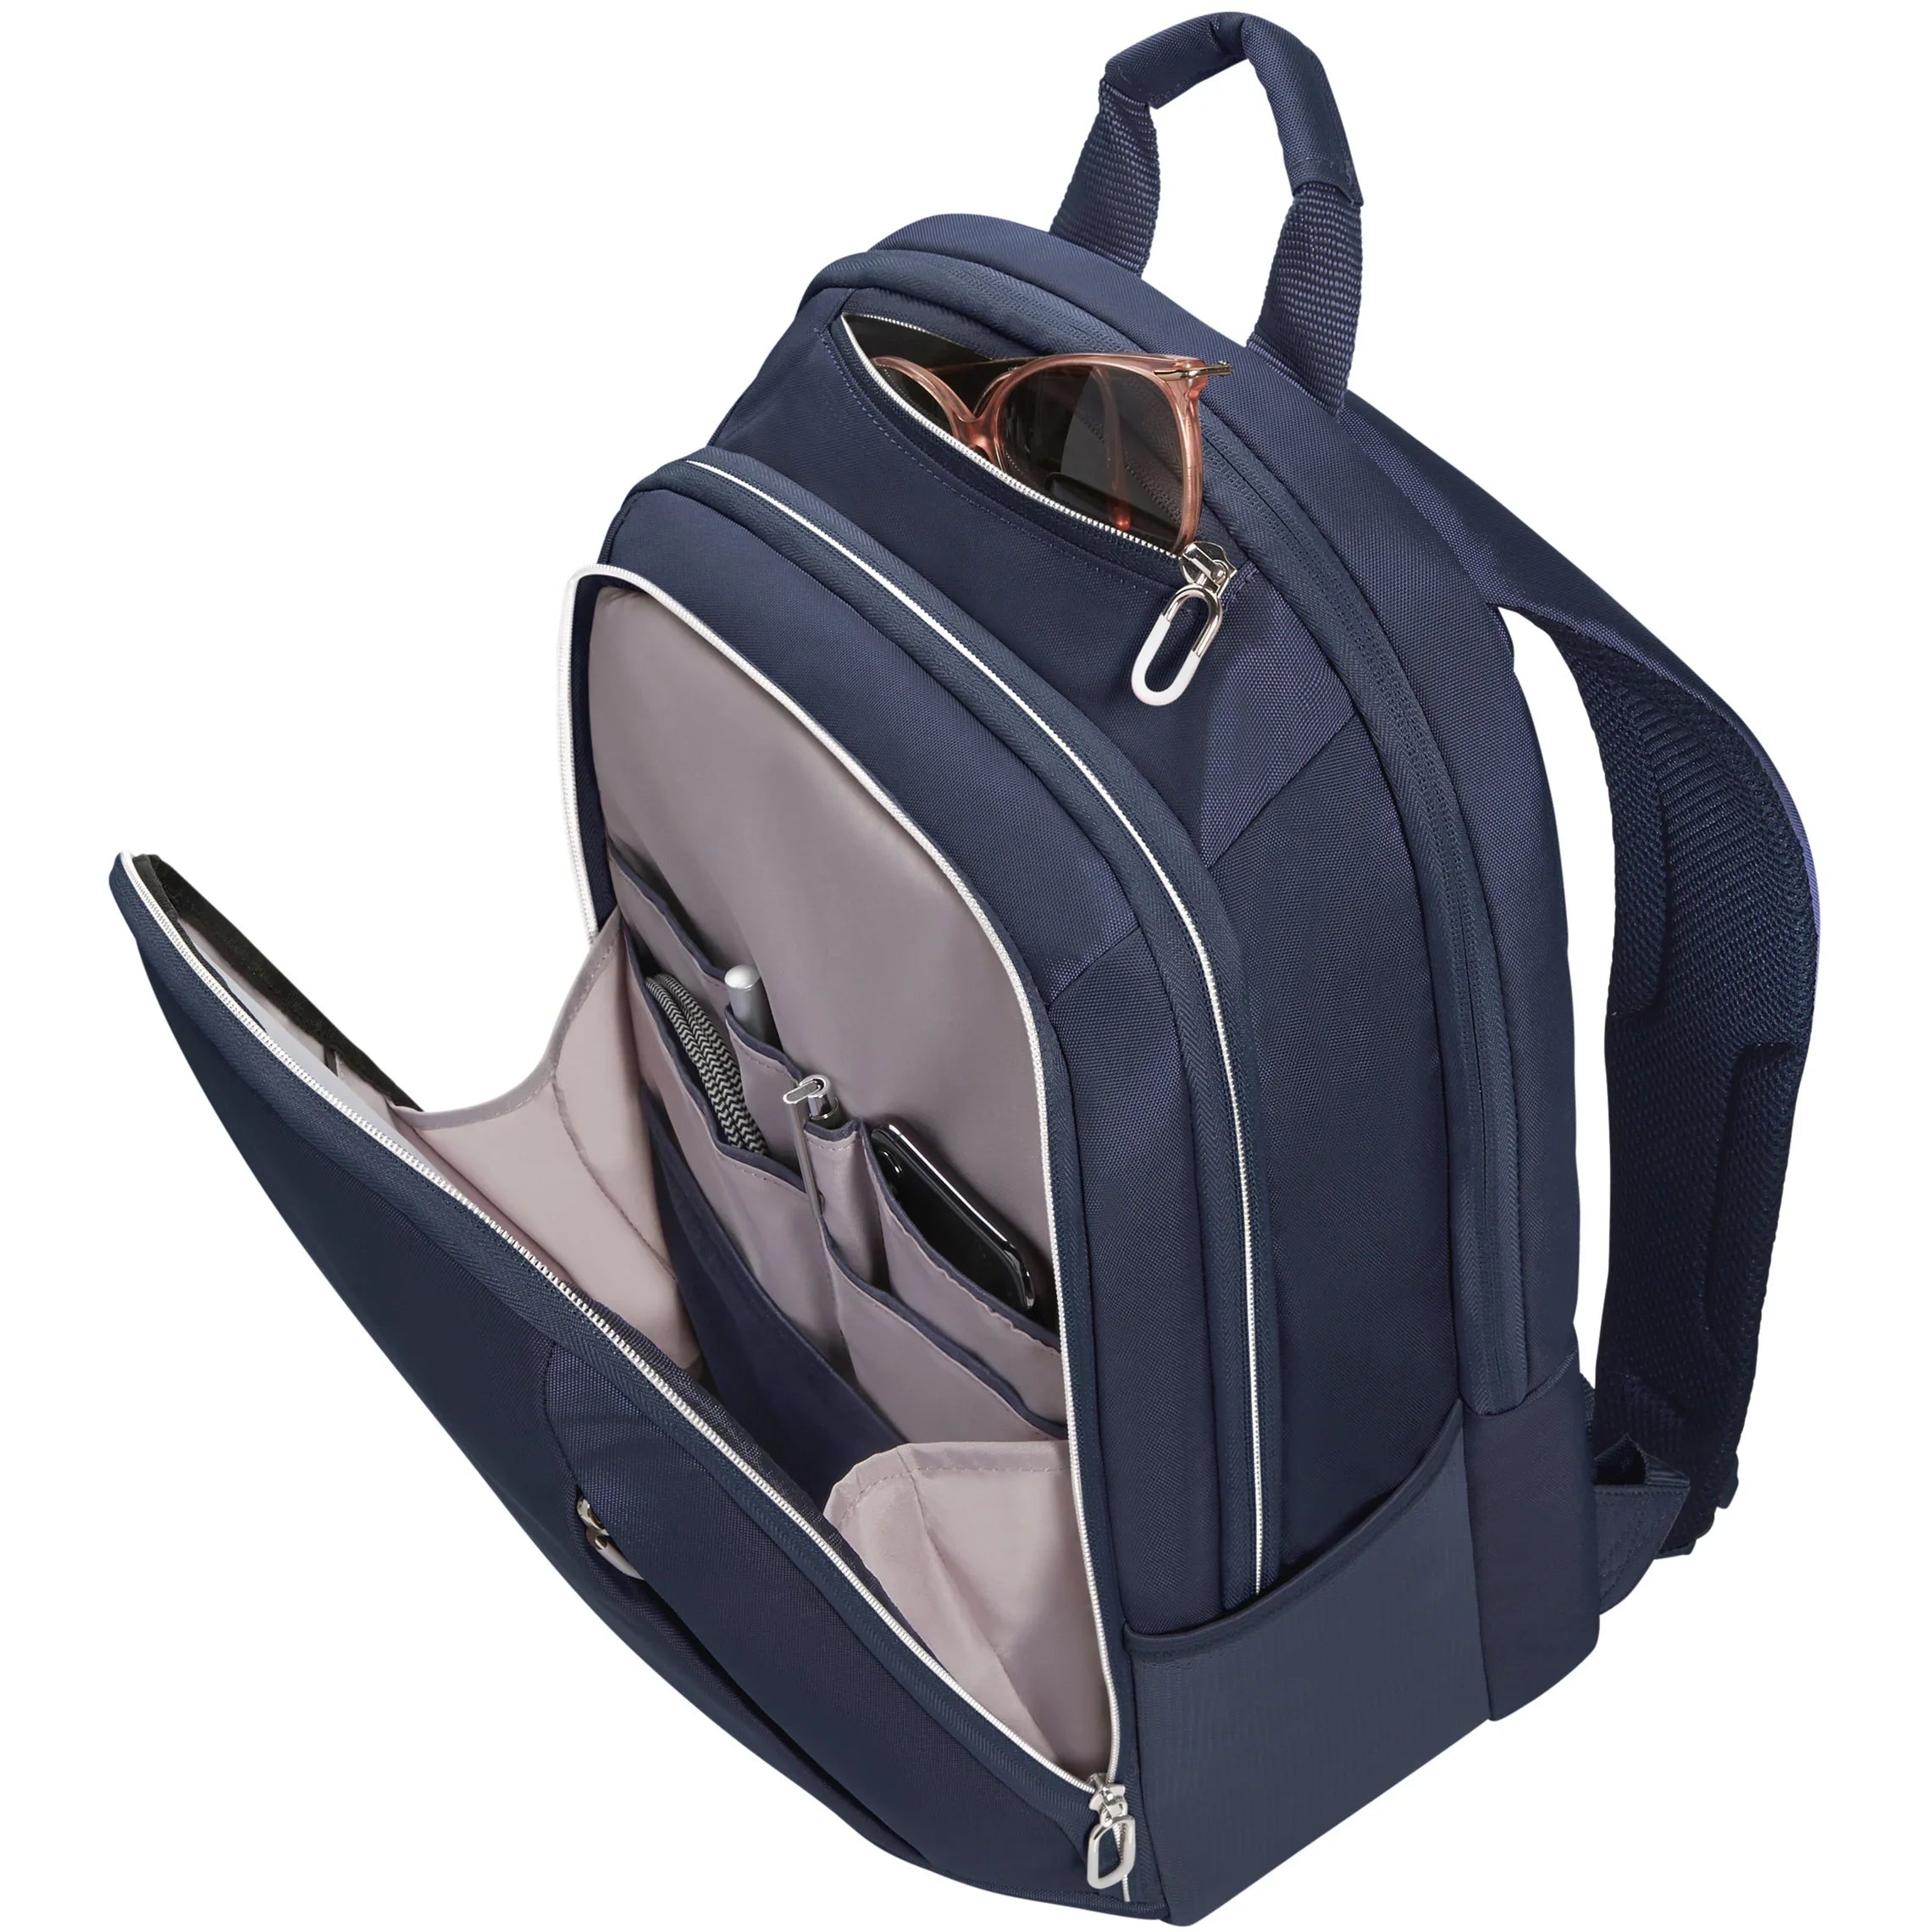 Samsonite Guardit Classy Backpack 44 cm - Stone Grey